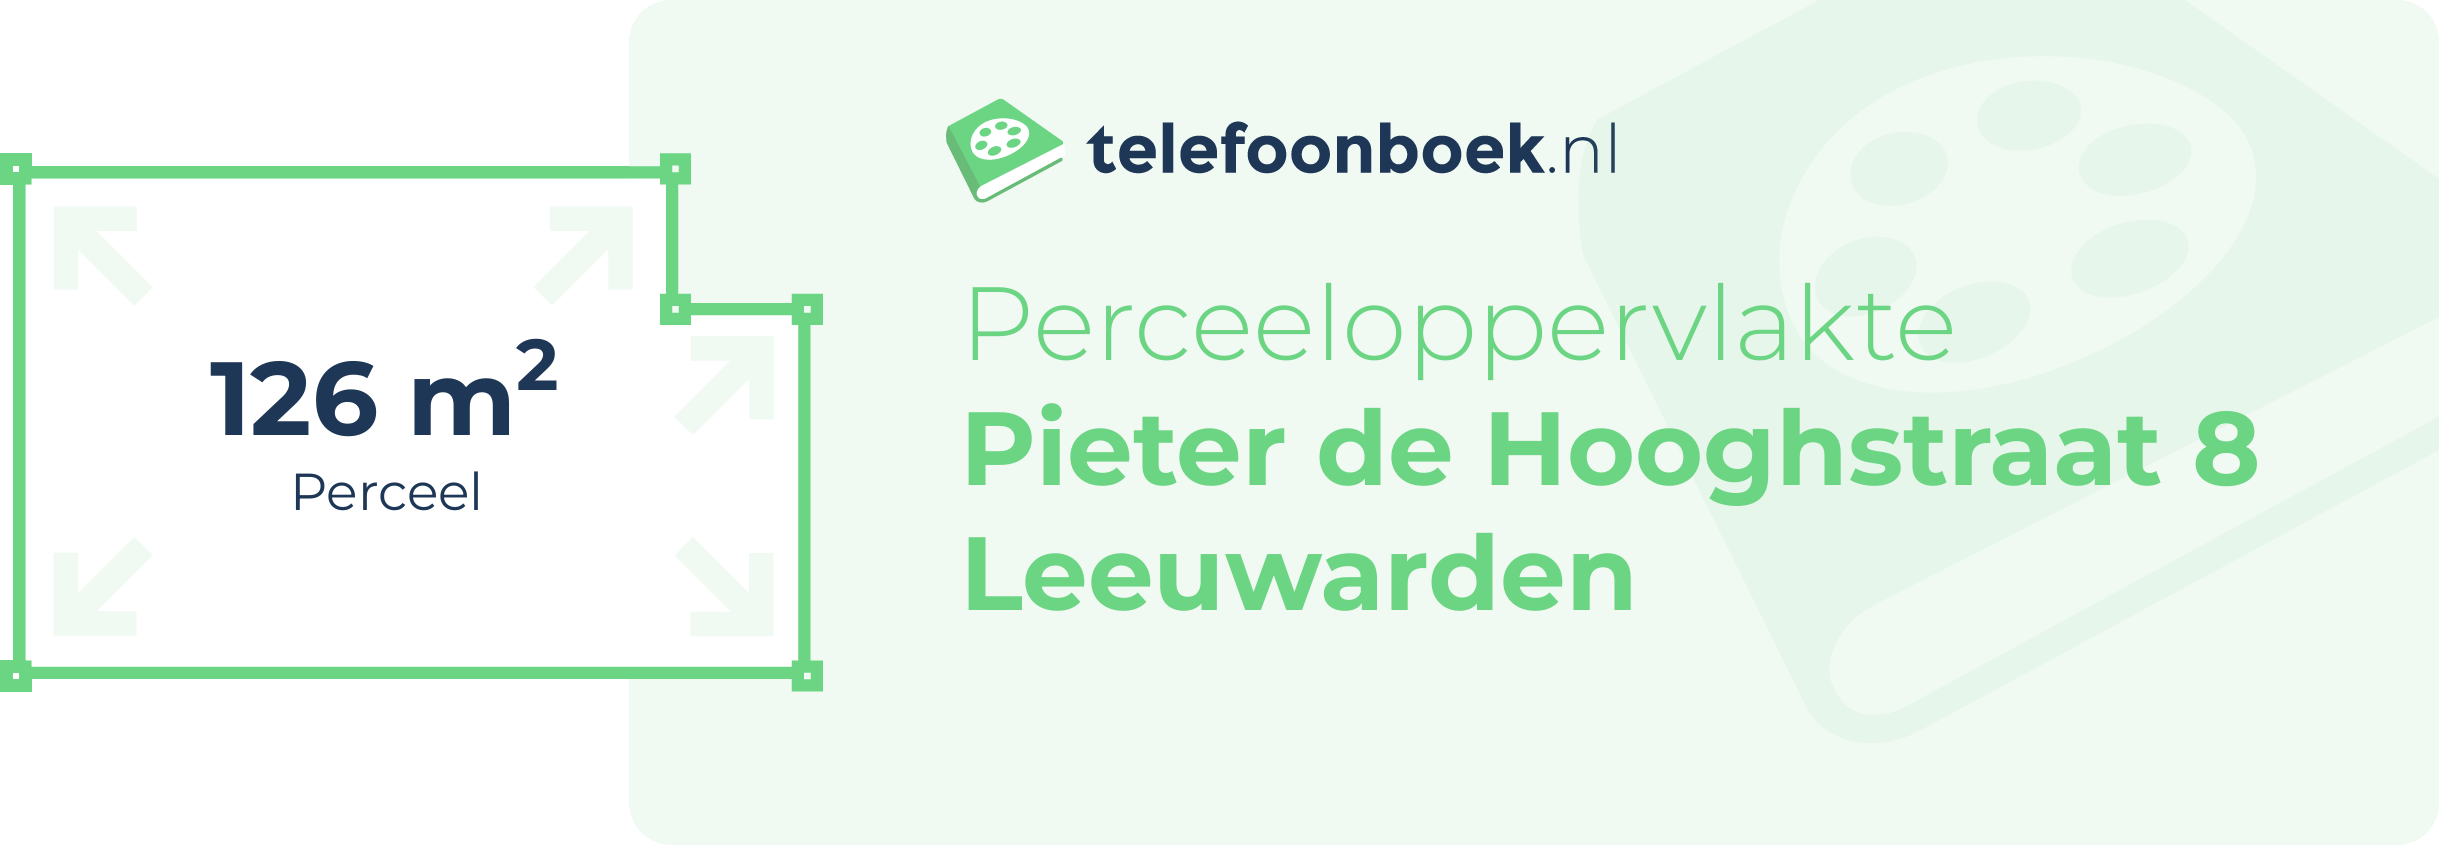 Perceeloppervlakte Pieter De Hooghstraat 8 Leeuwarden